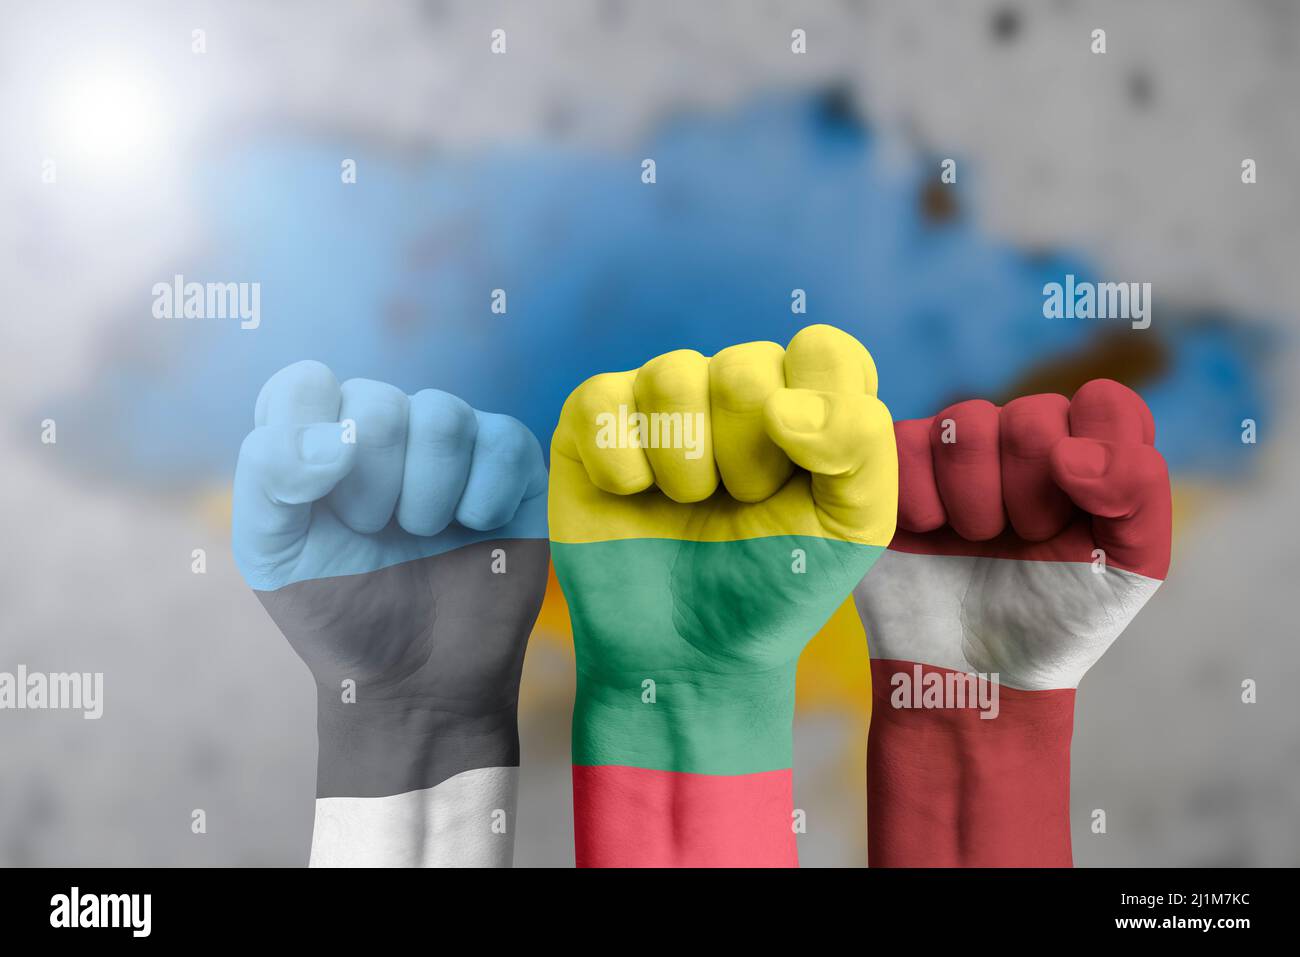 Die baltischen Länder unterstützen die Ukraine. Humanitäre Hilfe für die Ukraine. Die Faust ist in den Farben der Flagge Litauens, Lettlands, Estlands gegen gemalt Stockfoto